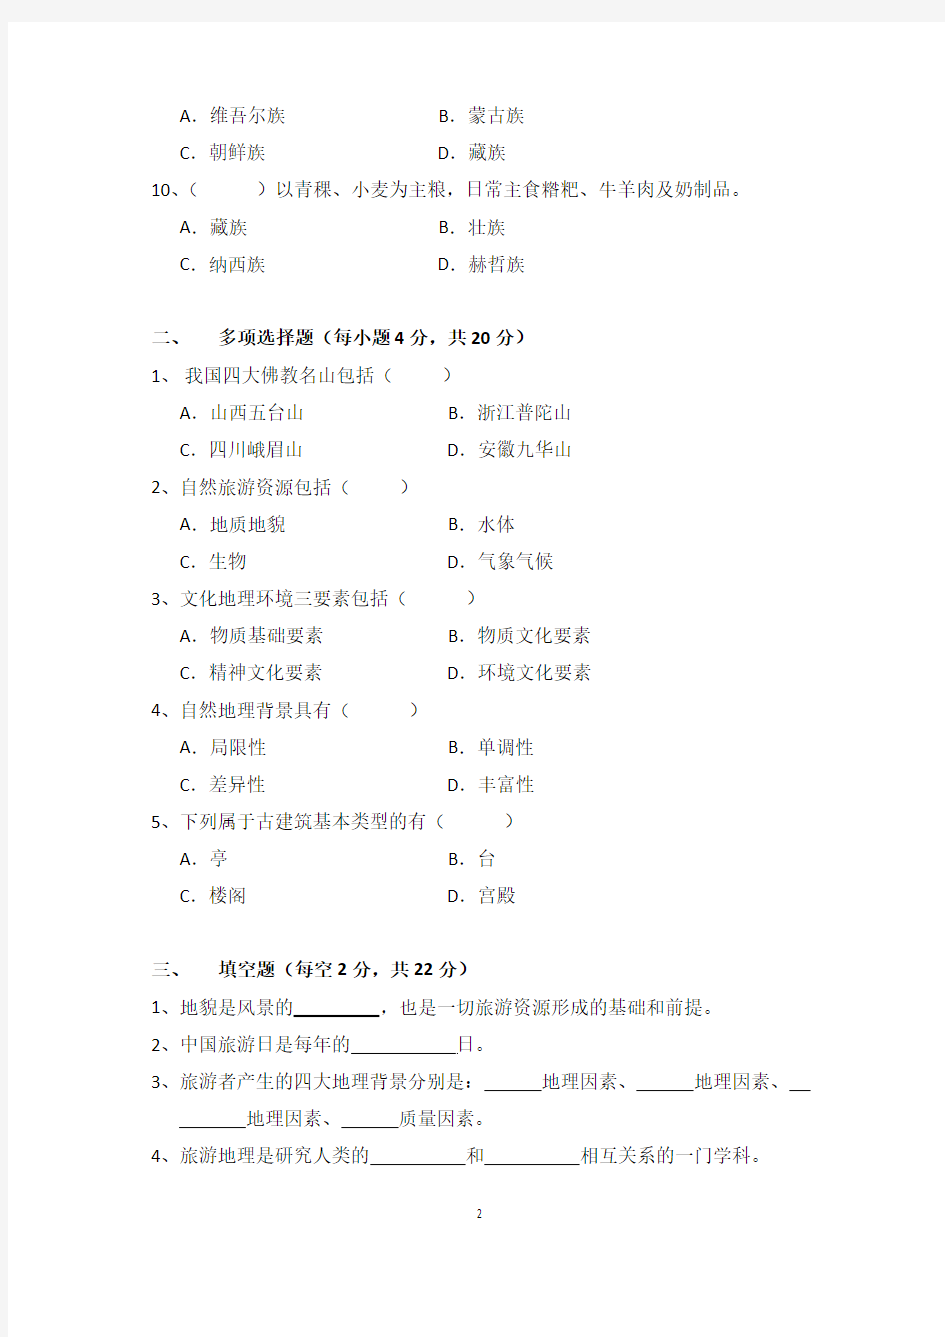 中国旅游地理期中考试试题(17高铁、17航空)